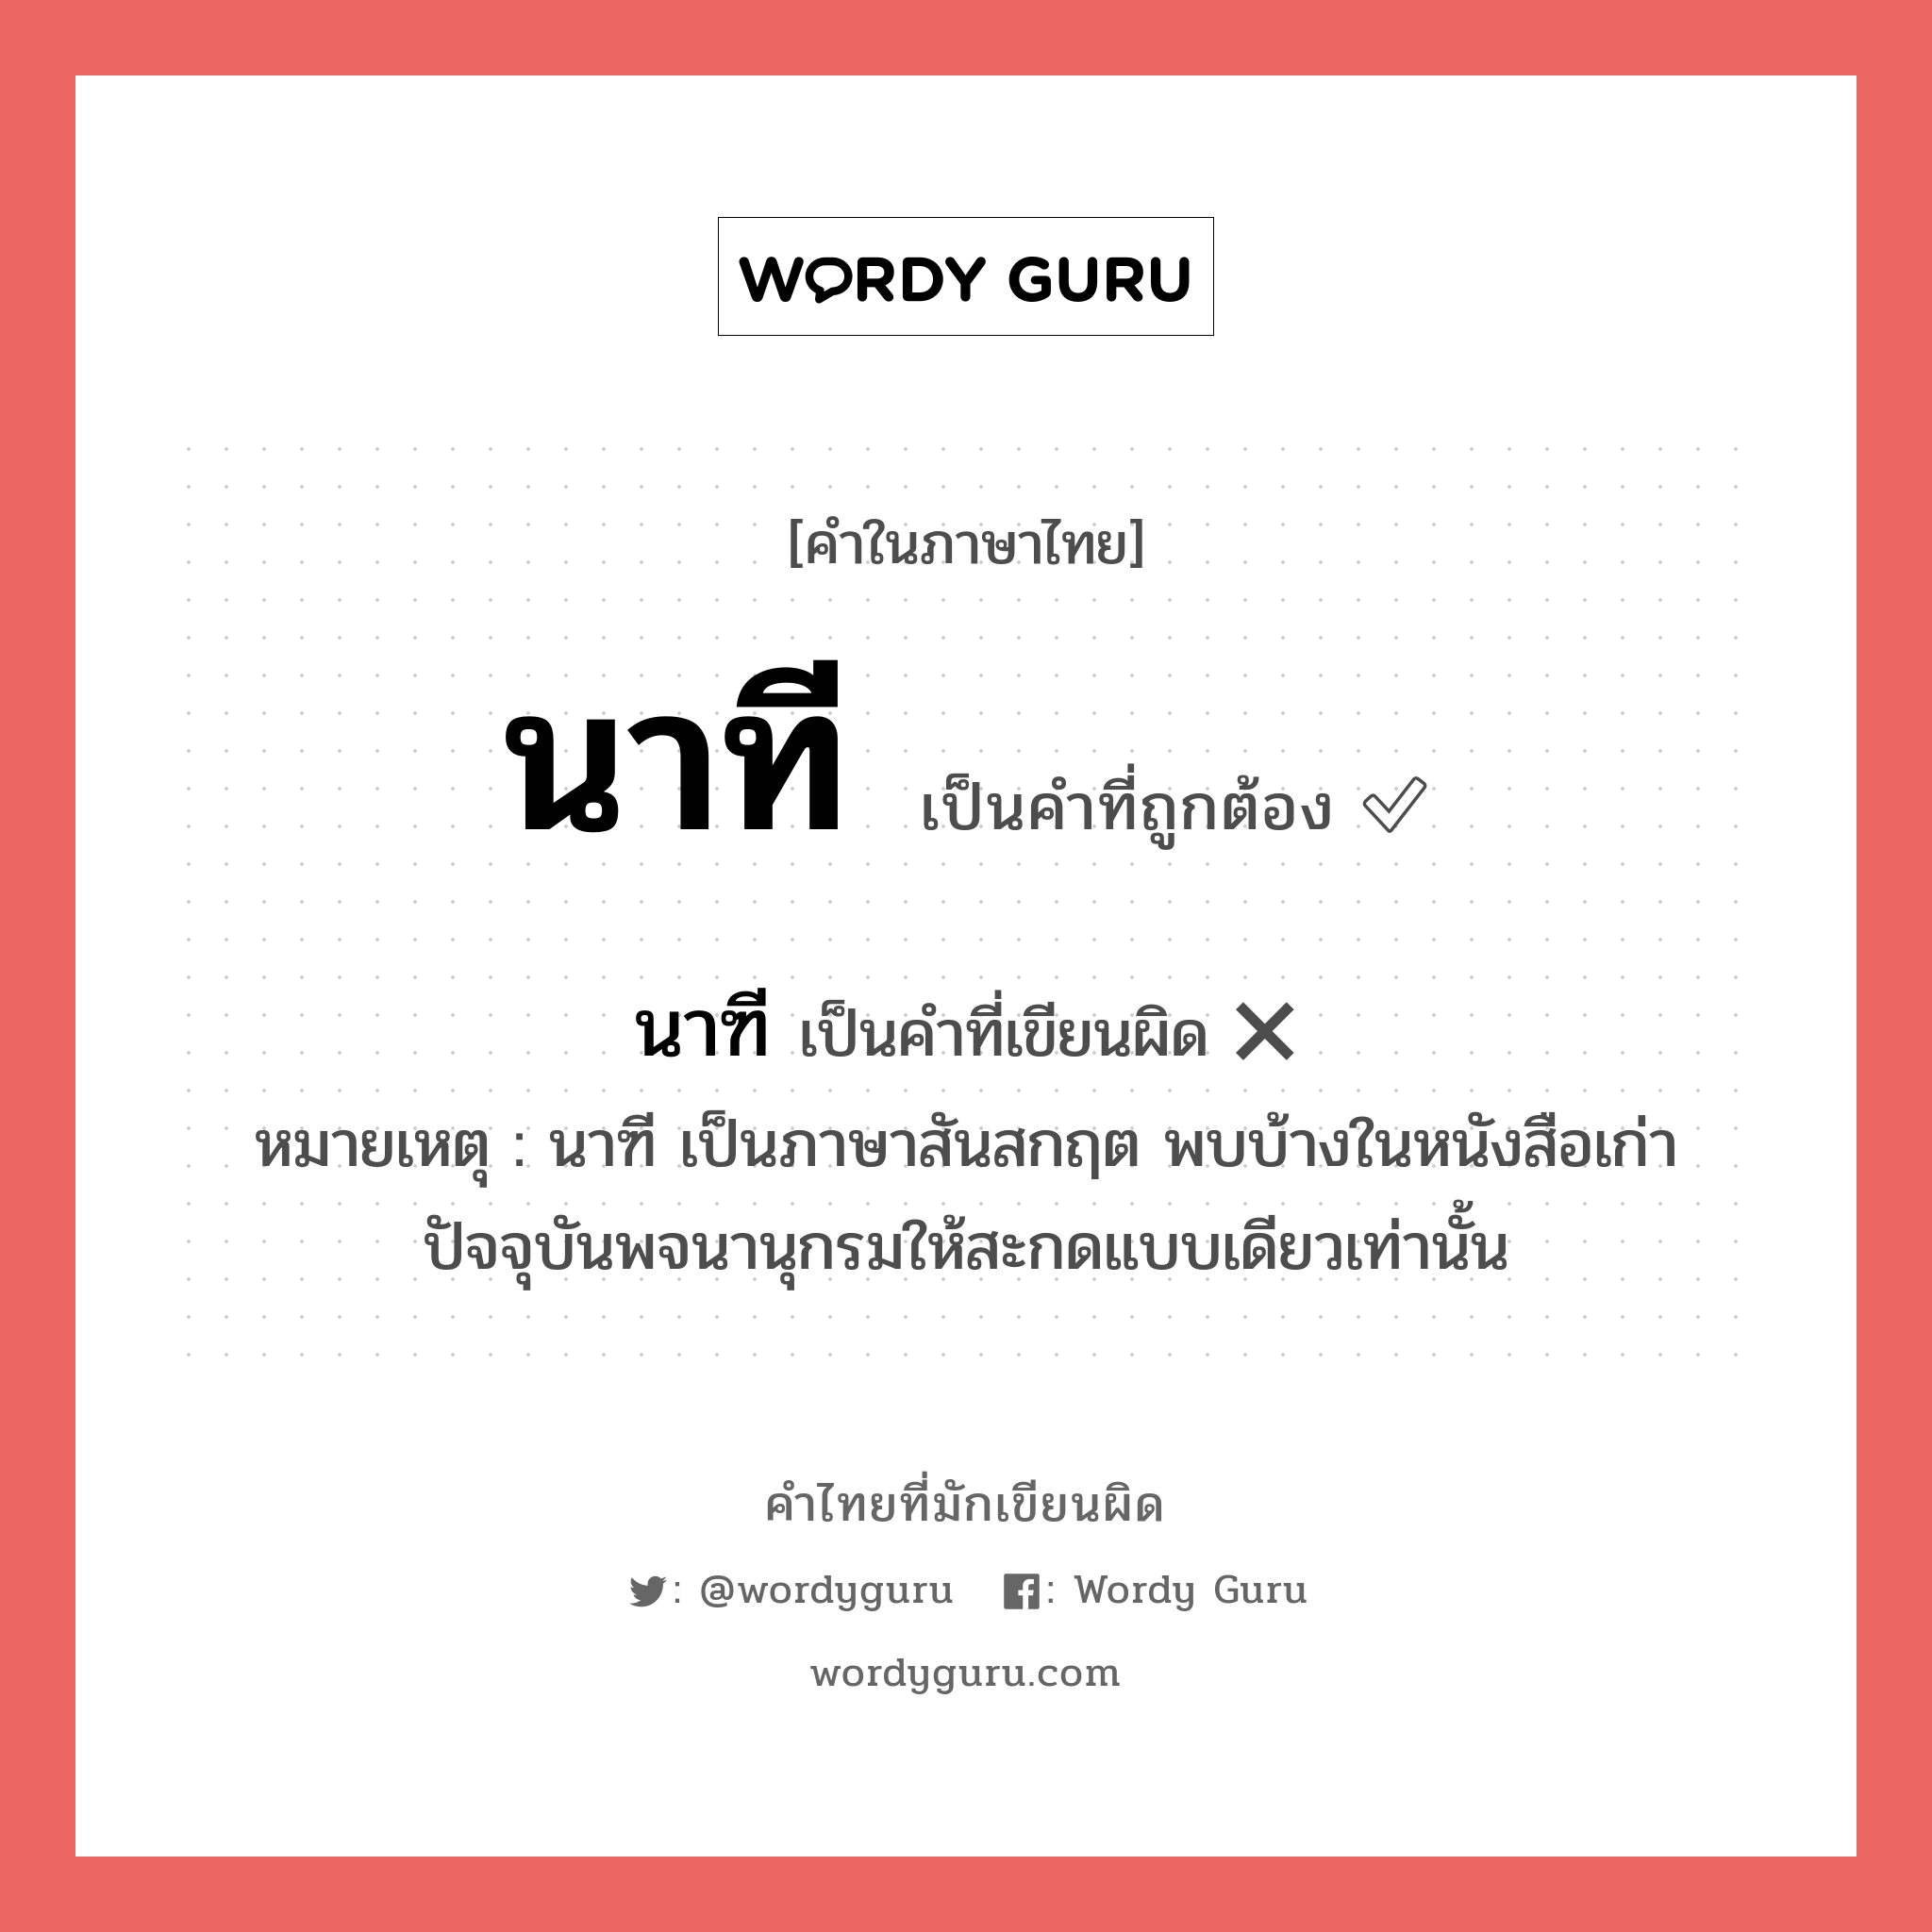 นาที หรือ นาฑี คำไหนเขียนถูก?, คำในภาษาไทยที่มักเขียนผิด นาที คำที่ผิด ❌ นาฑี หมายเหตุ นาฑี เป็นภาษาสันสกฤต พบบ้างในหนังสือเก่า ปัจจุบันพจนานุกรมให้สะกดแบบเดียวเท่านั้น